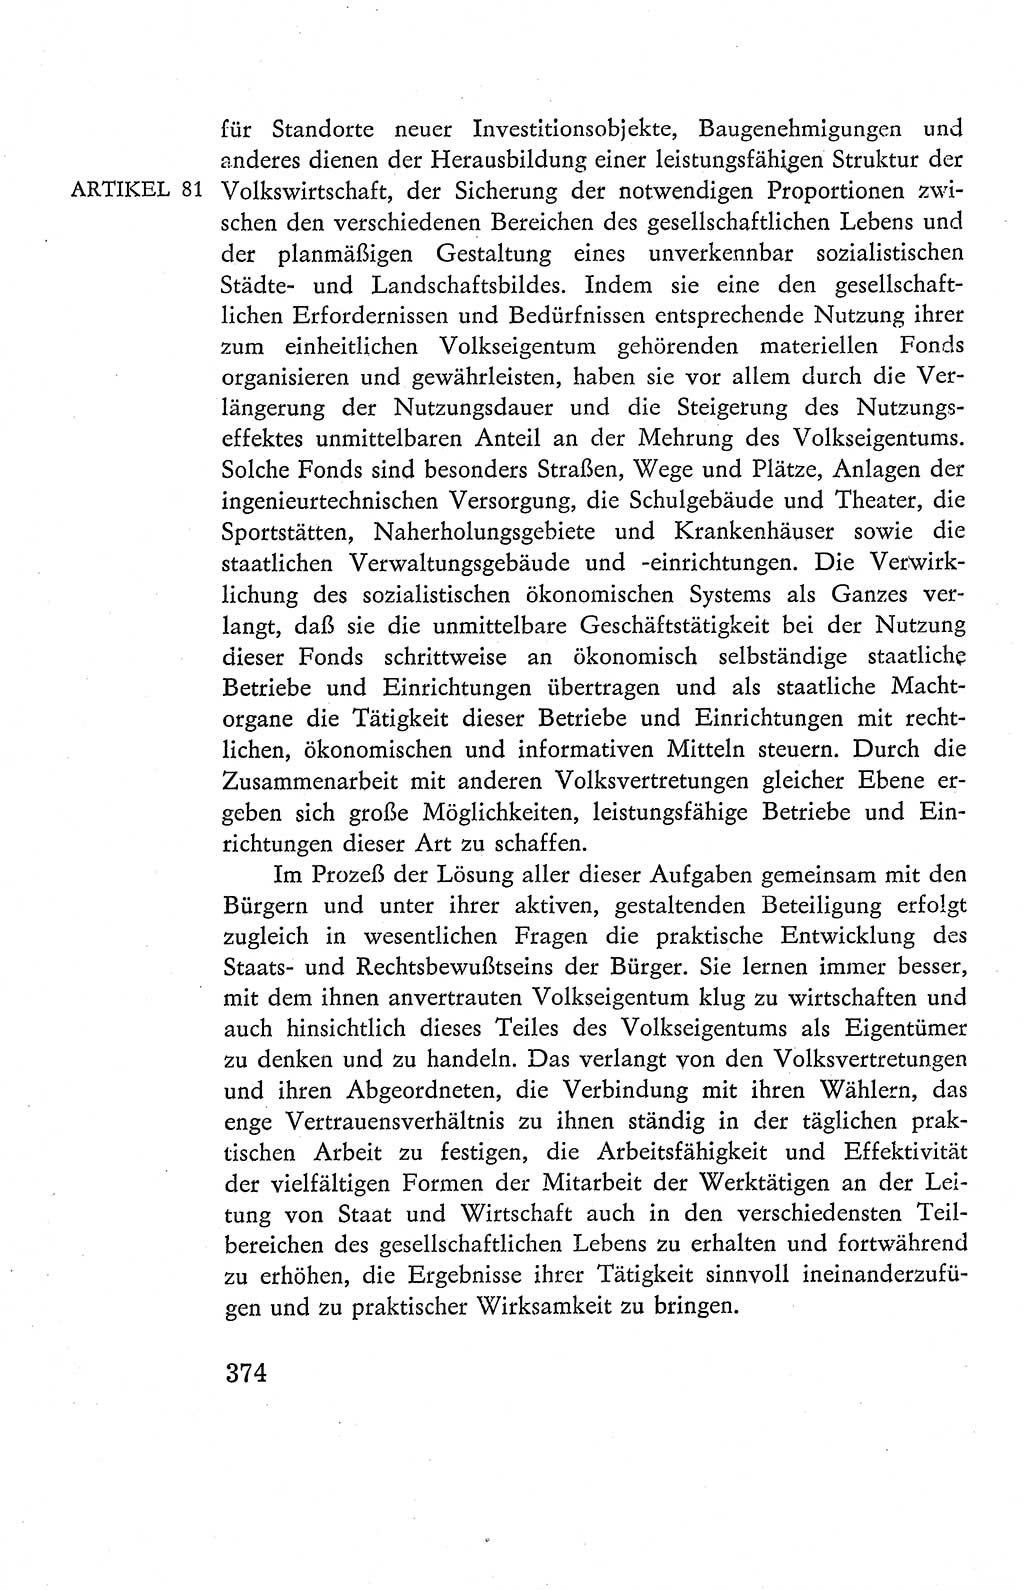 Verfassung der Deutschen Demokratischen Republik (DDR), Dokumente, Kommentar 1969, Band 2, Seite 374 (Verf. DDR Dok. Komm. 1969, Bd. 2, S. 374)